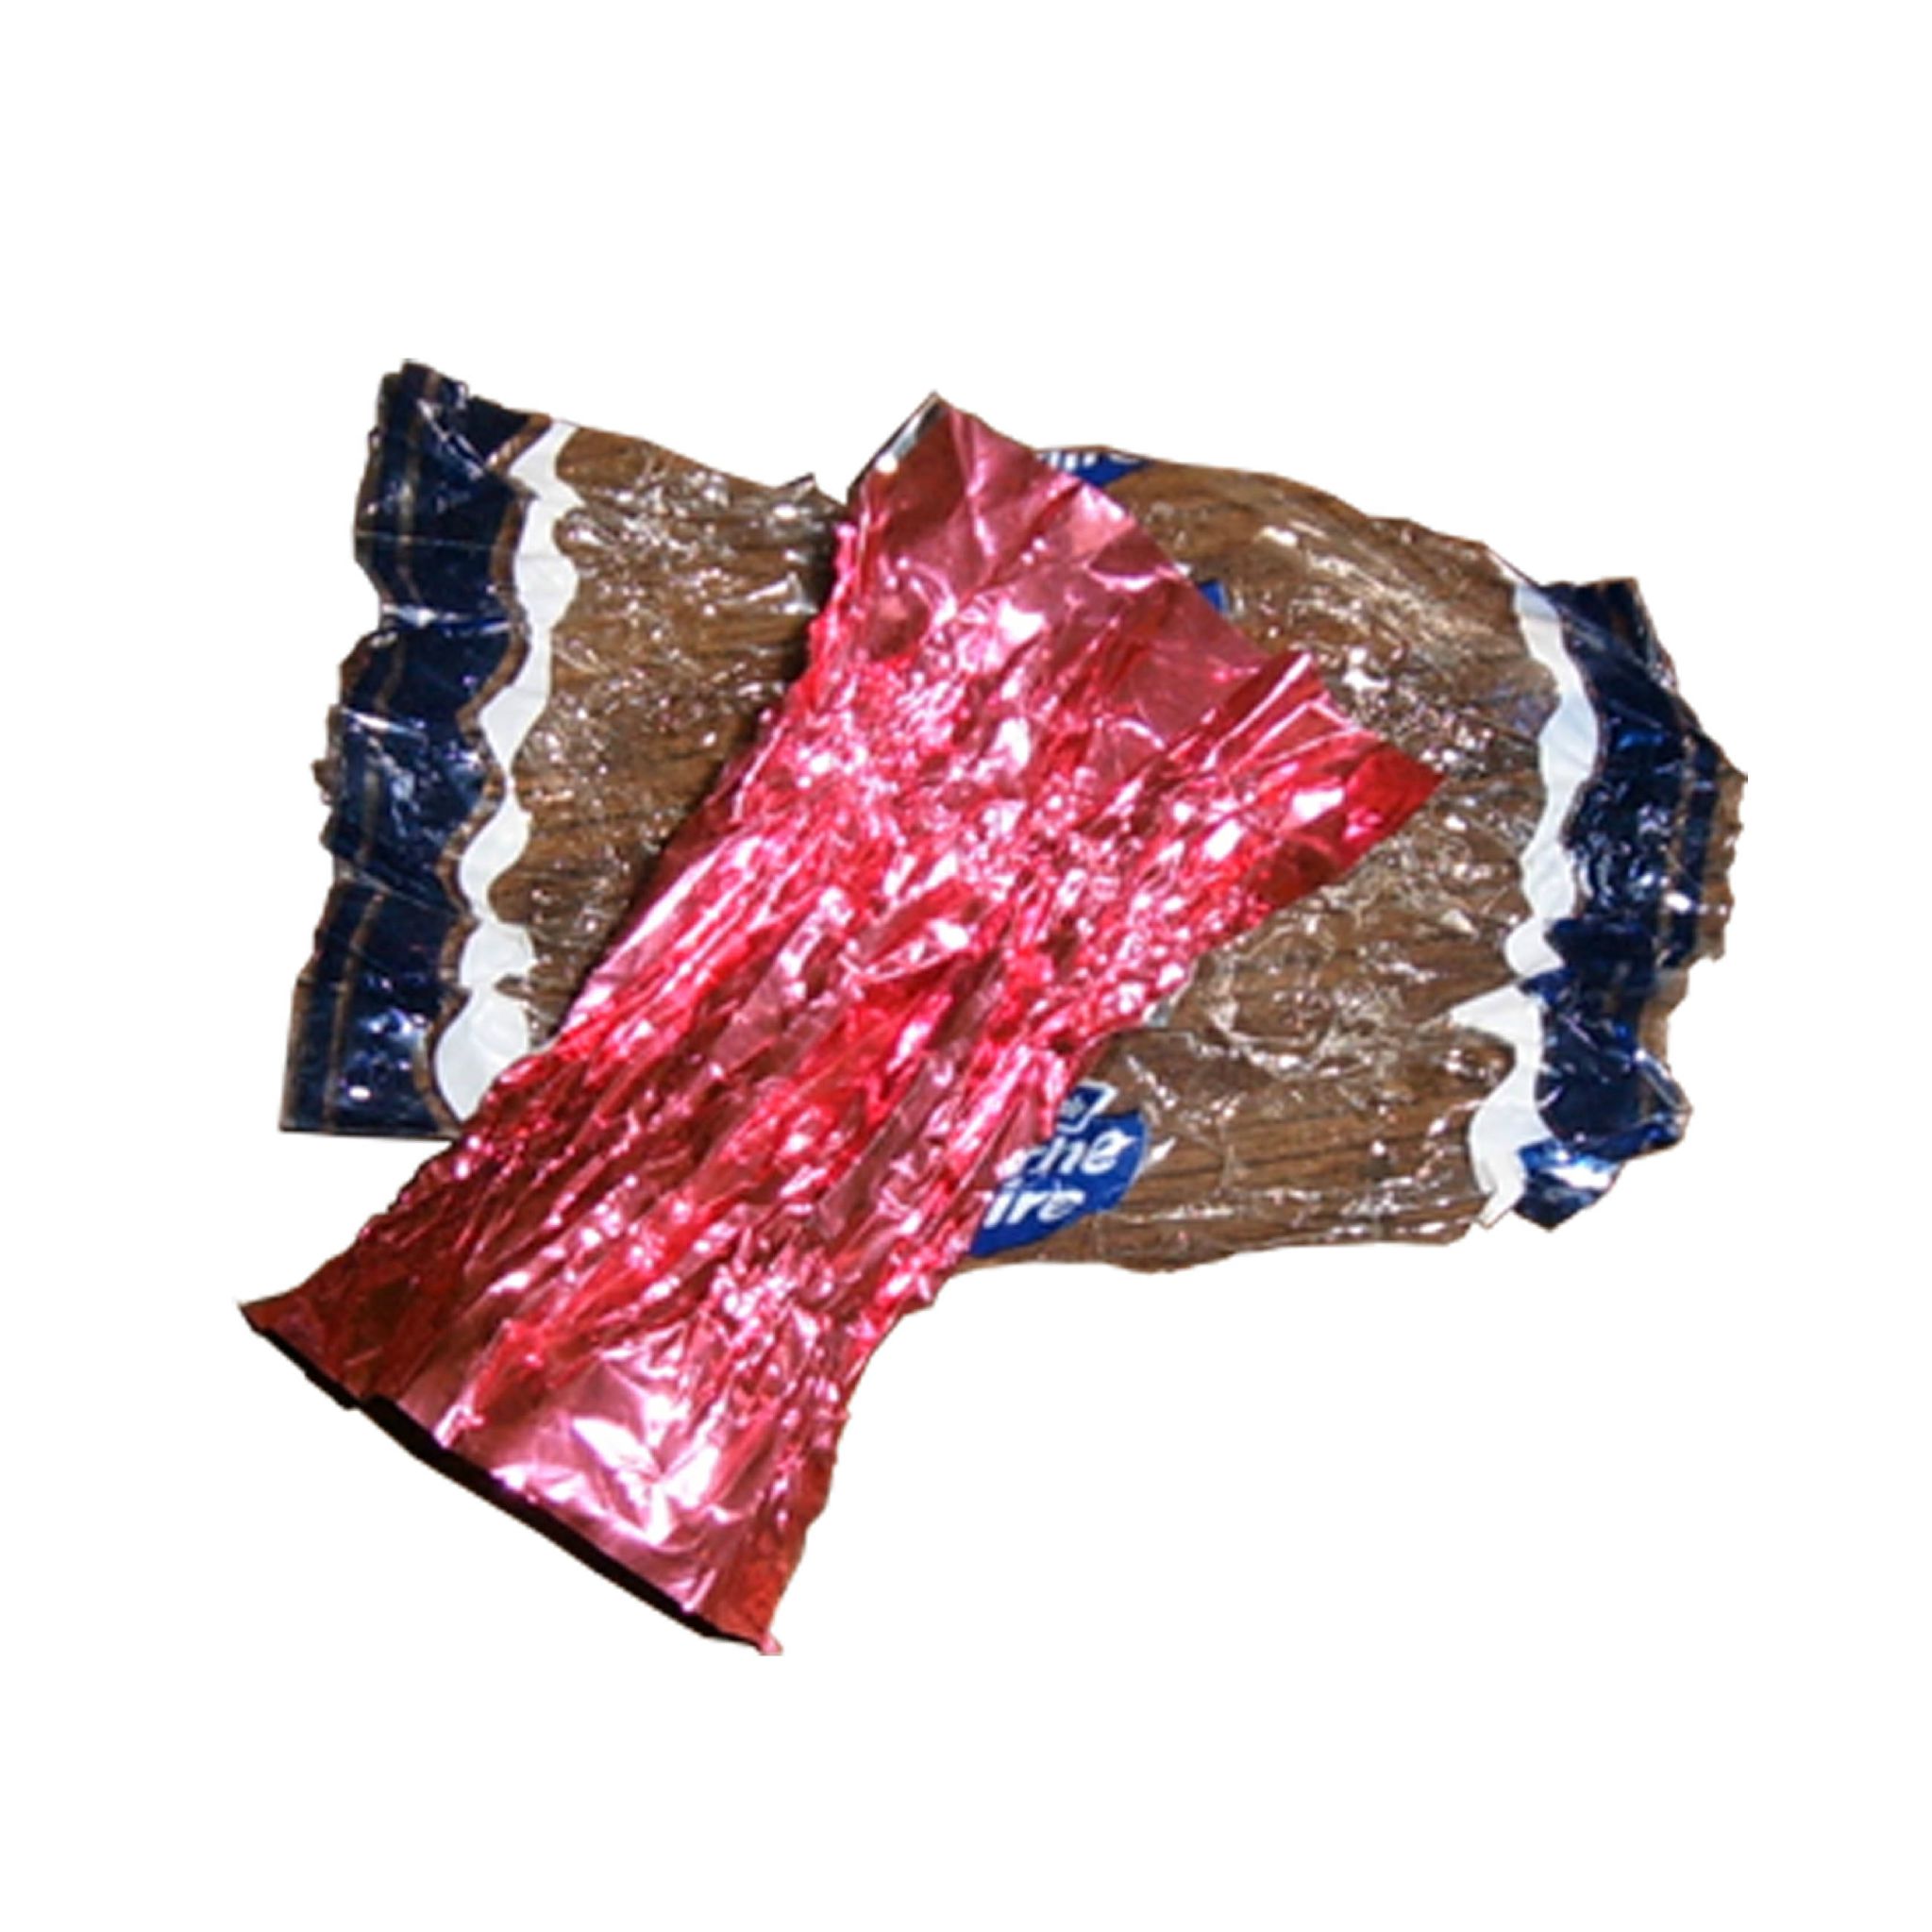 Déchets plastiques - Pollution Papiers bonbon plastique non biodégradable